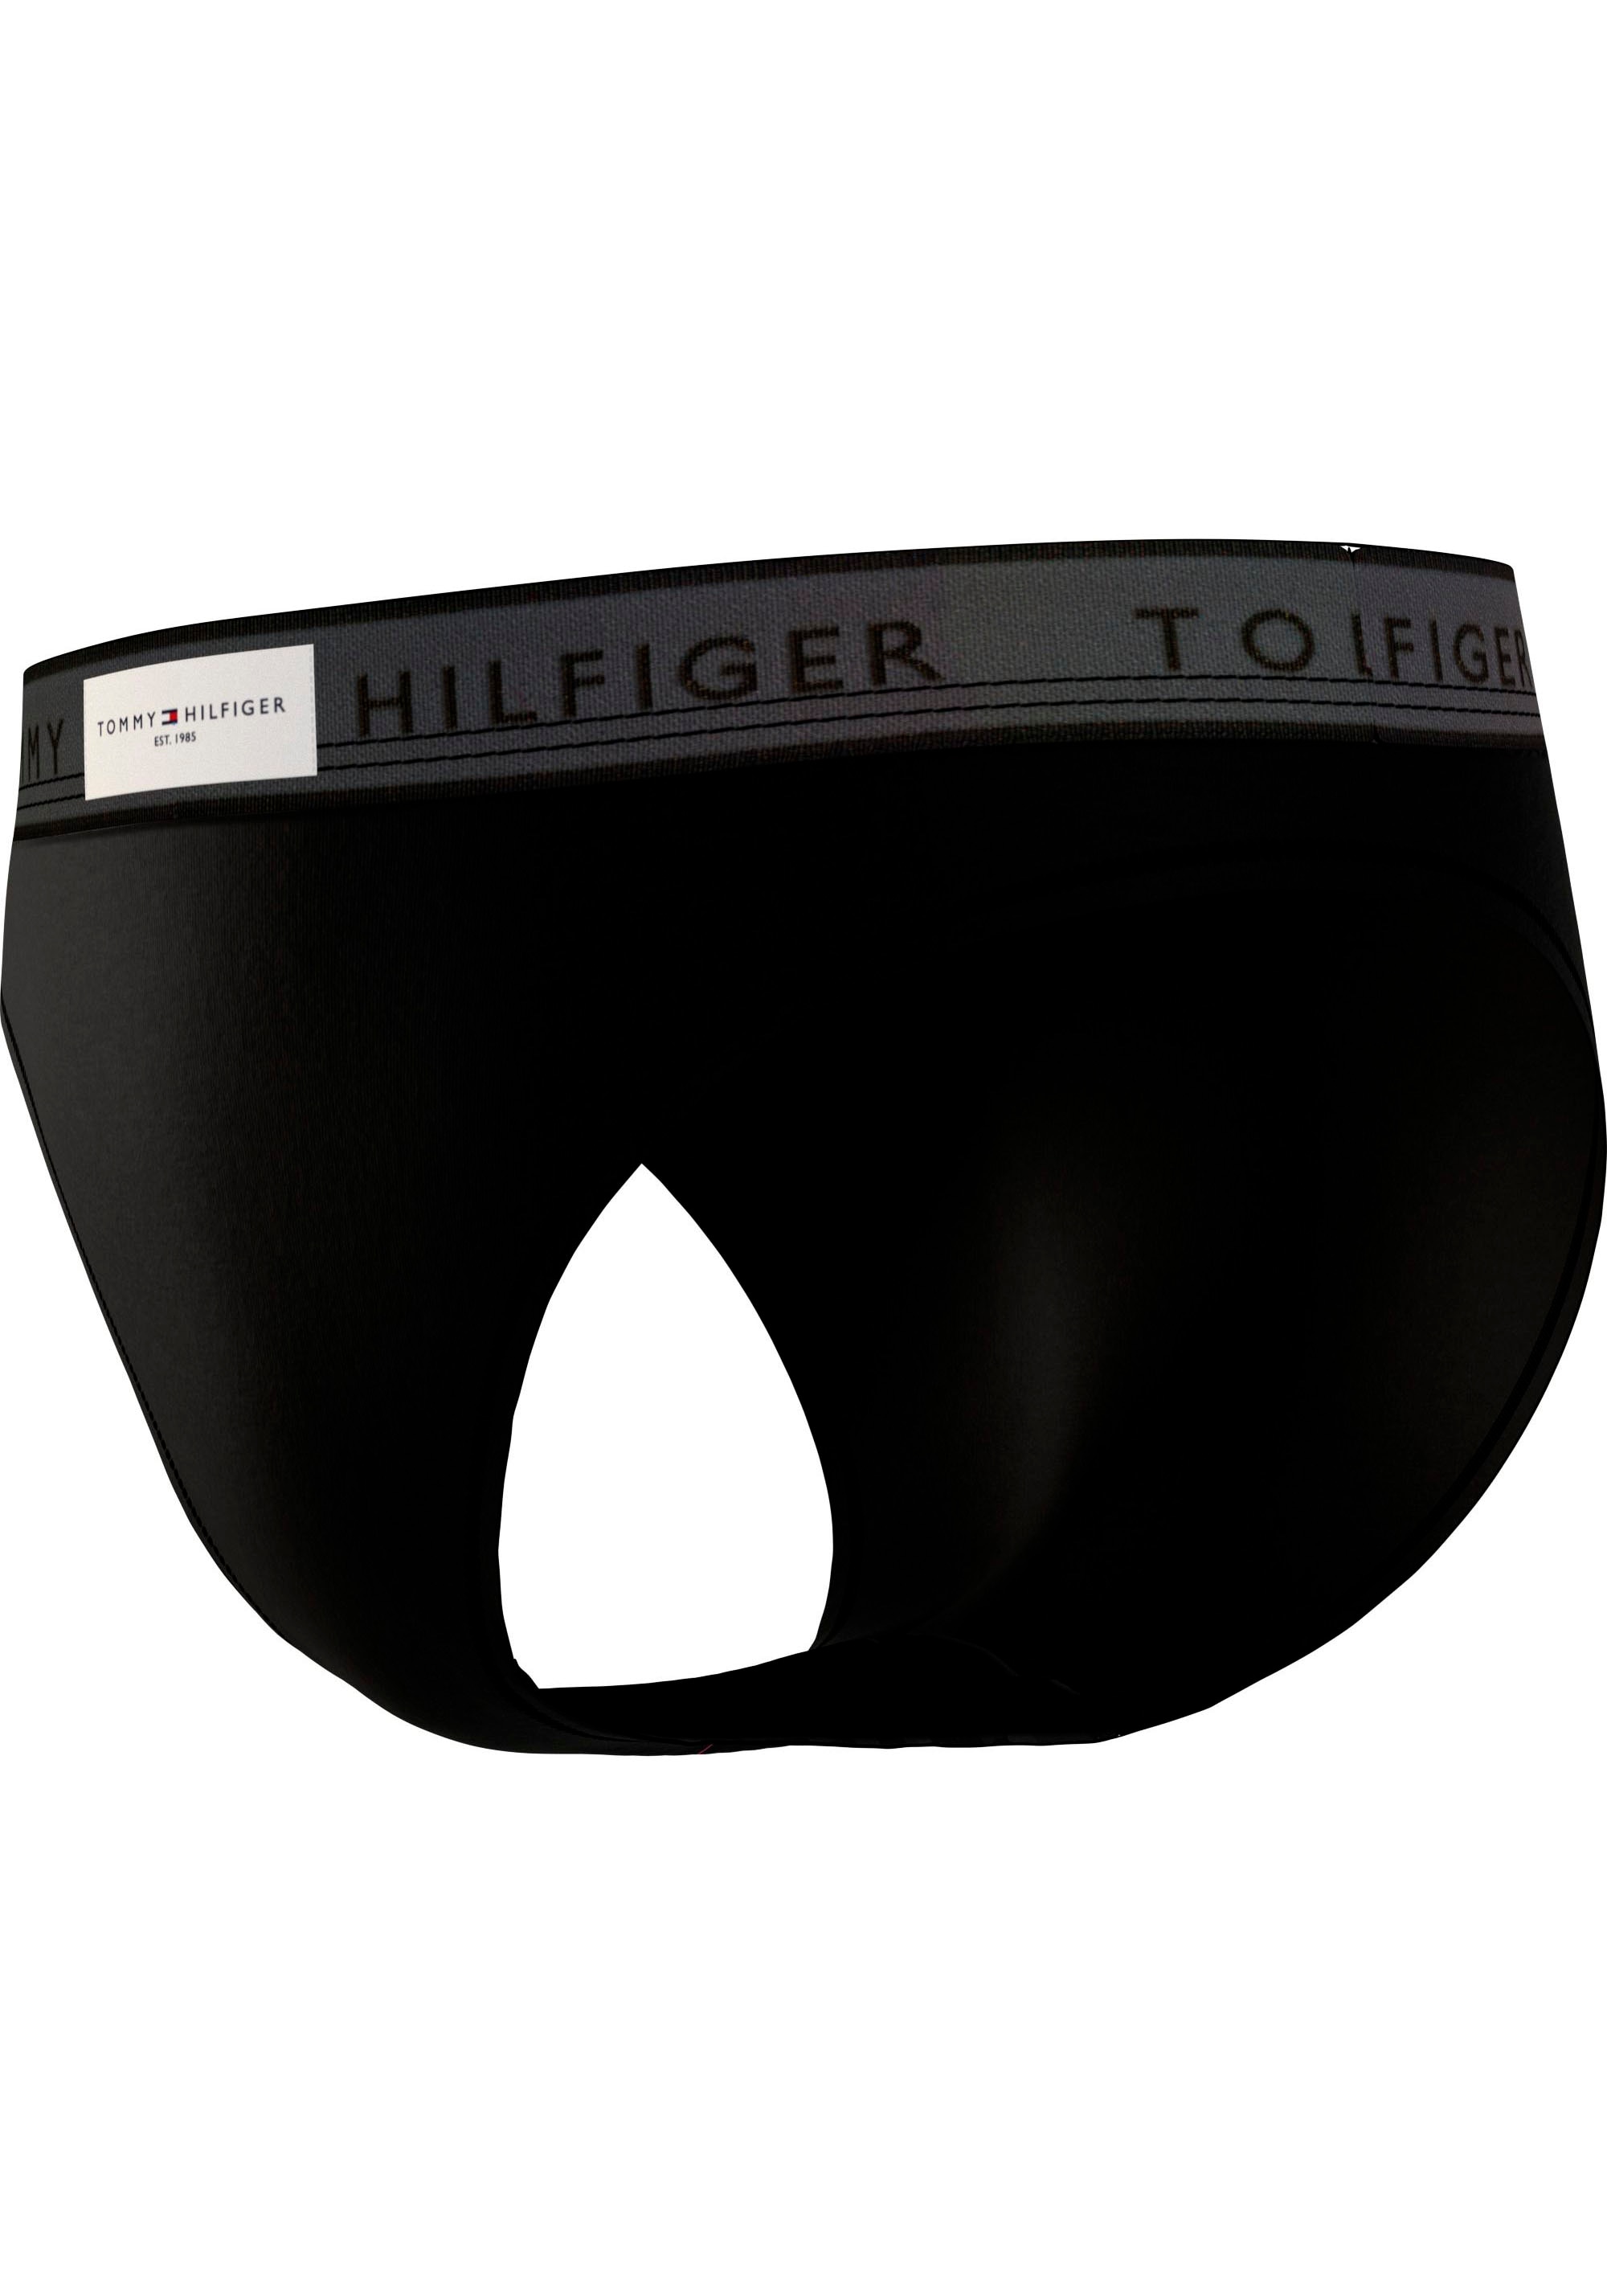 Tommy Hilfiger Underwear Bikinislip »BIKINI«, mit Tommy Hilfiger Logobund